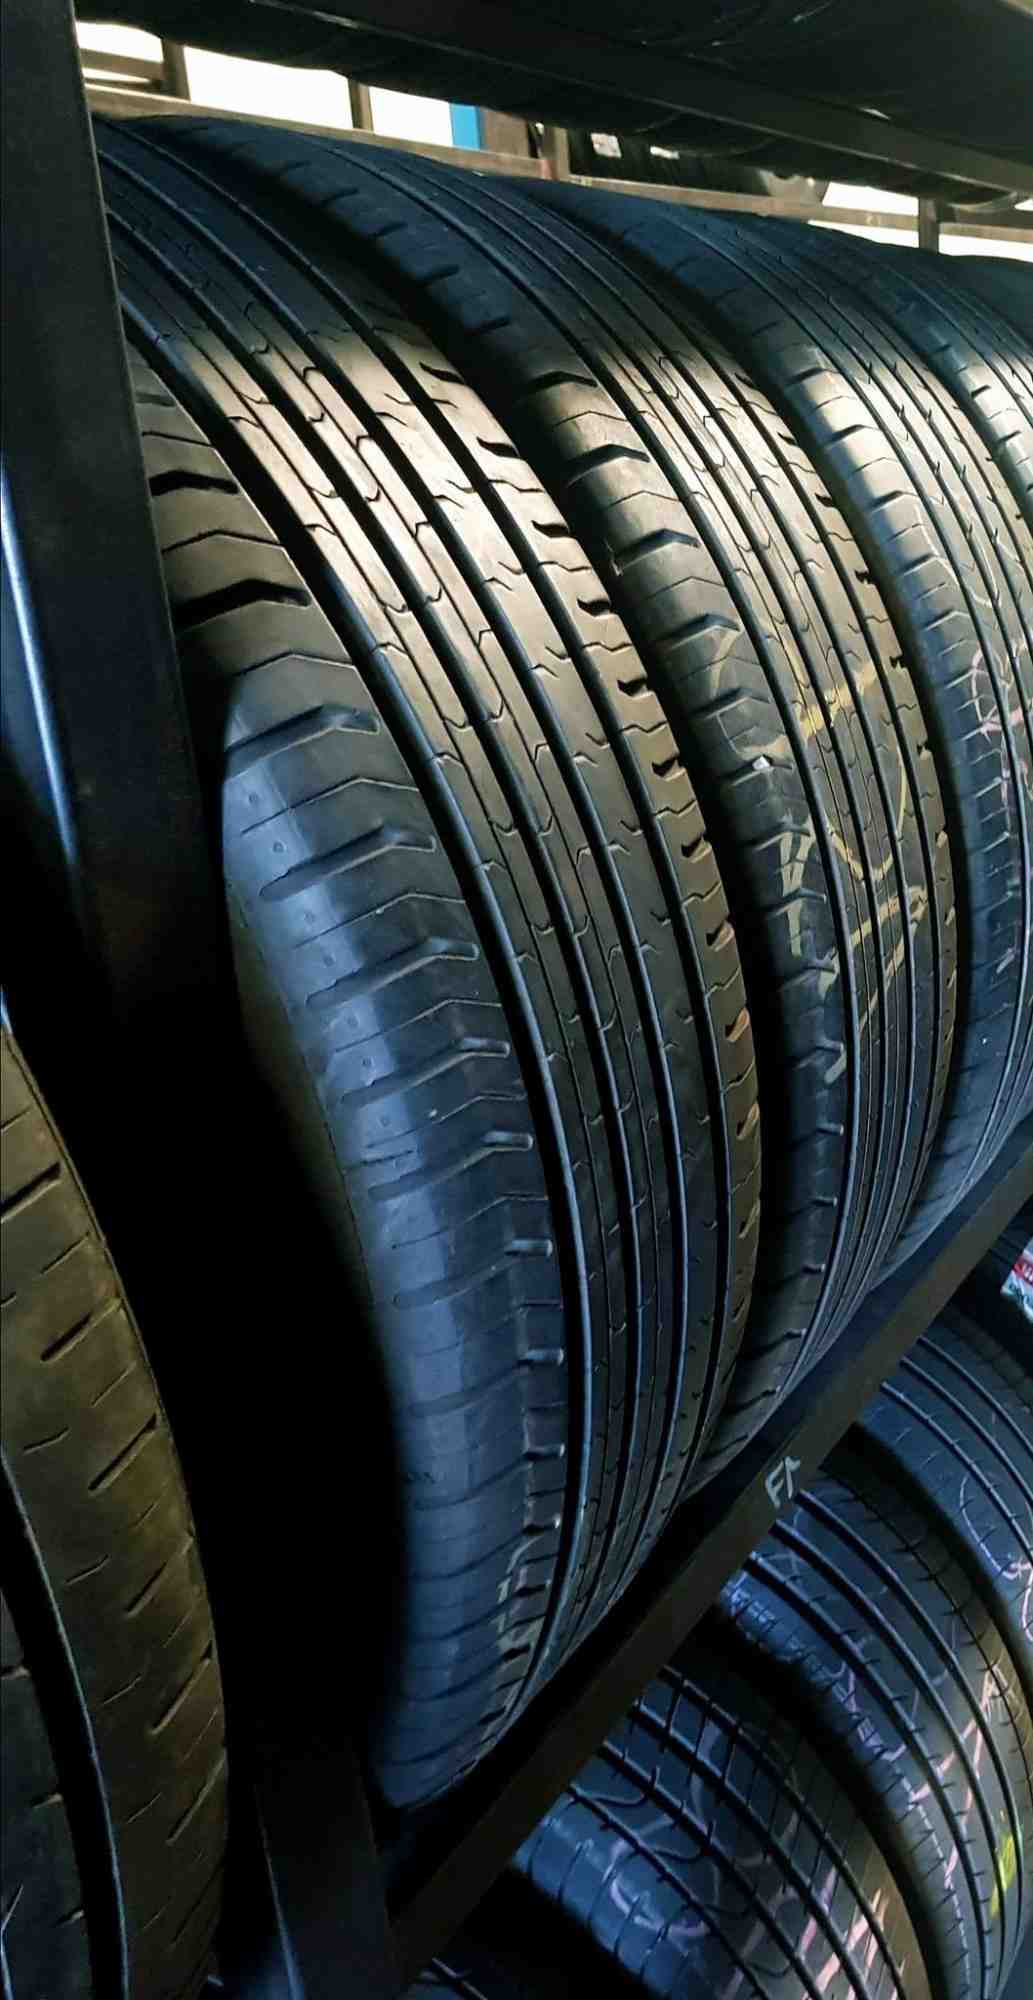 Comment vendre des pneus usagés?